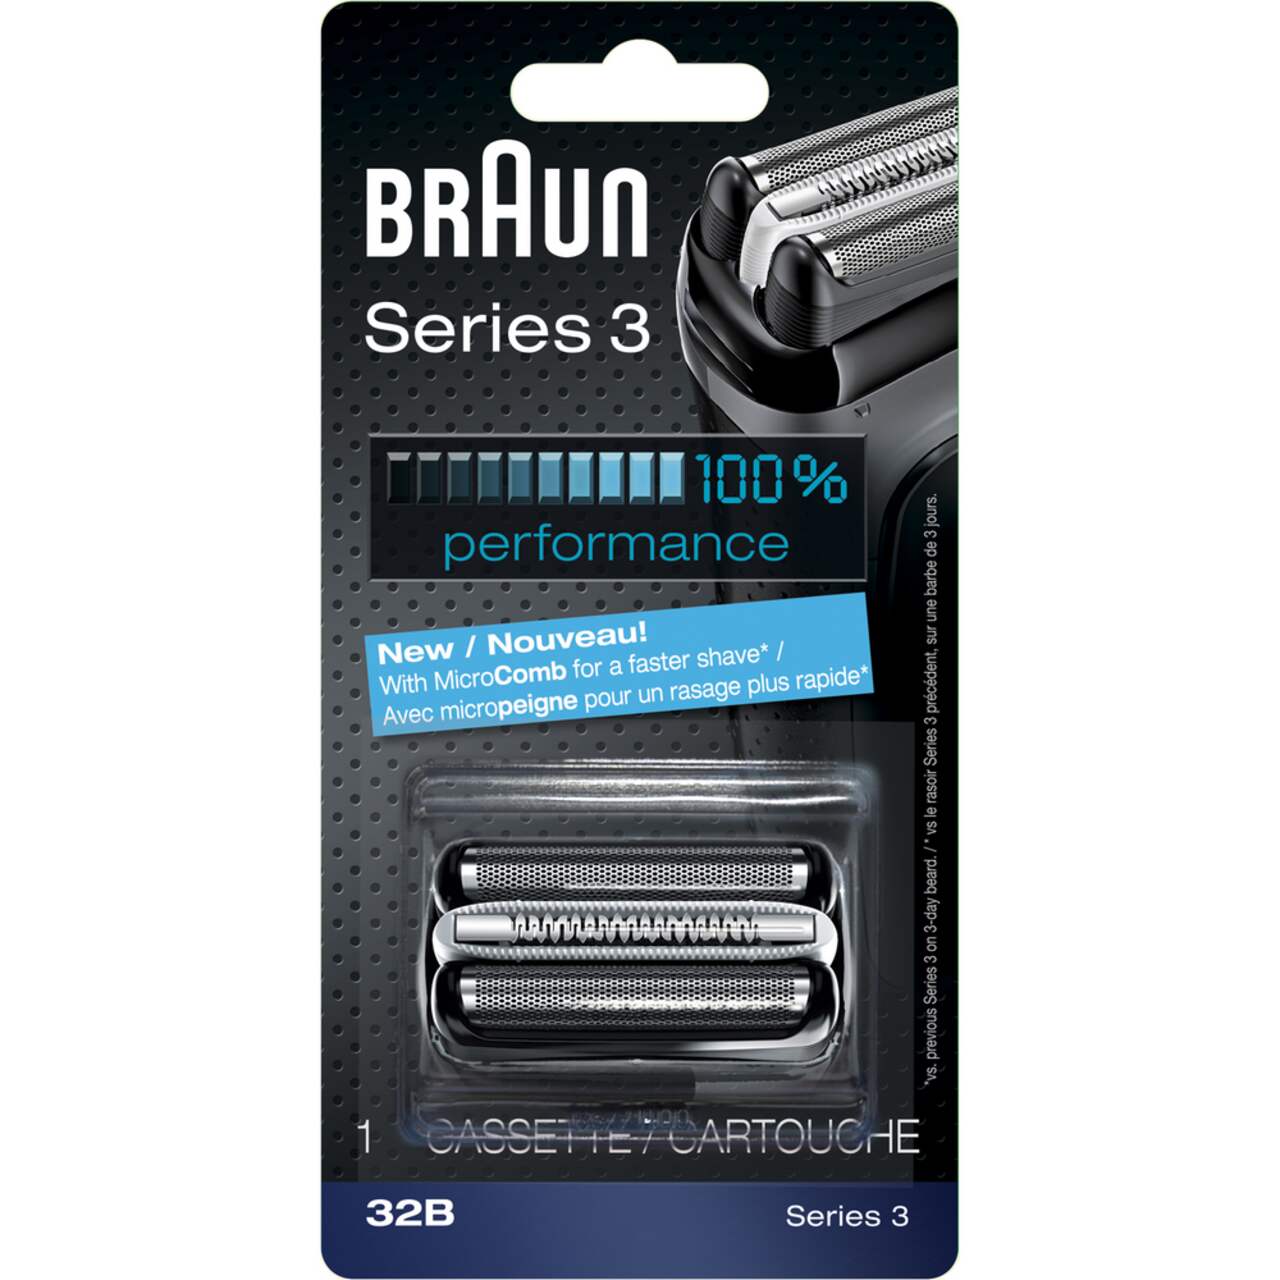 Braun Series 3: 32B Foil & Cutter Replacement Head Cassette For